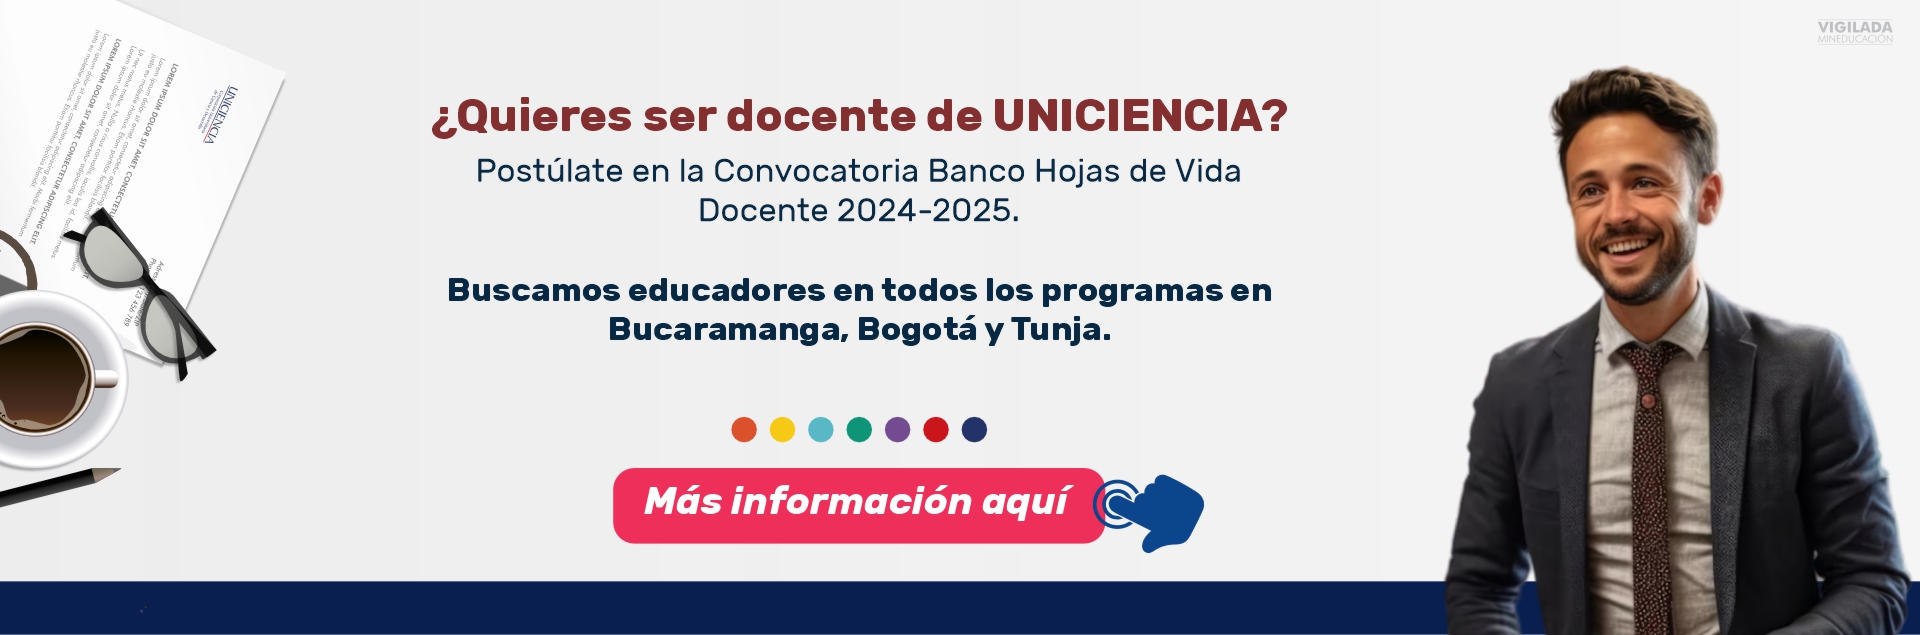 Convocatoria banco de hojas de vida Docente - UNICIENCIA 2024 - 2025